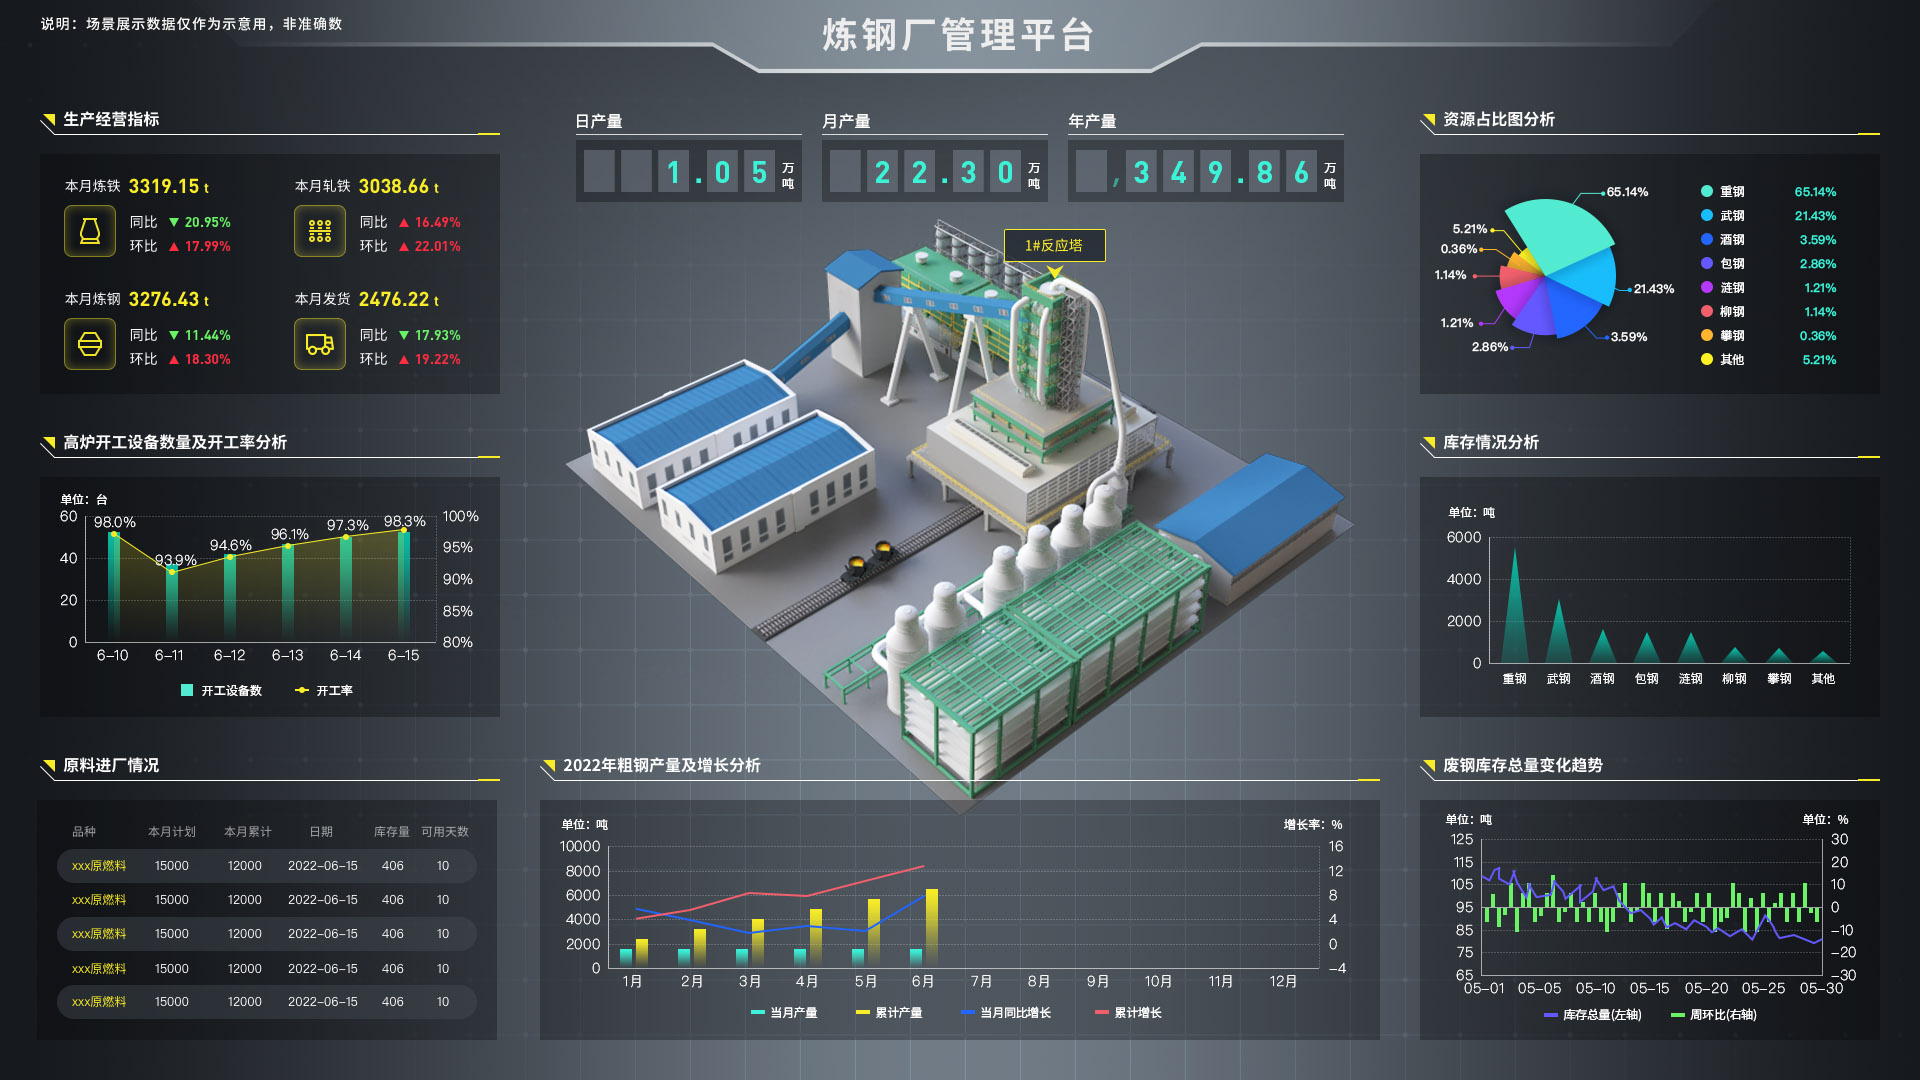 鋼鐵工藝視覺化 Sovit3D構建智慧鋼鐵廠三維數字孿生系統